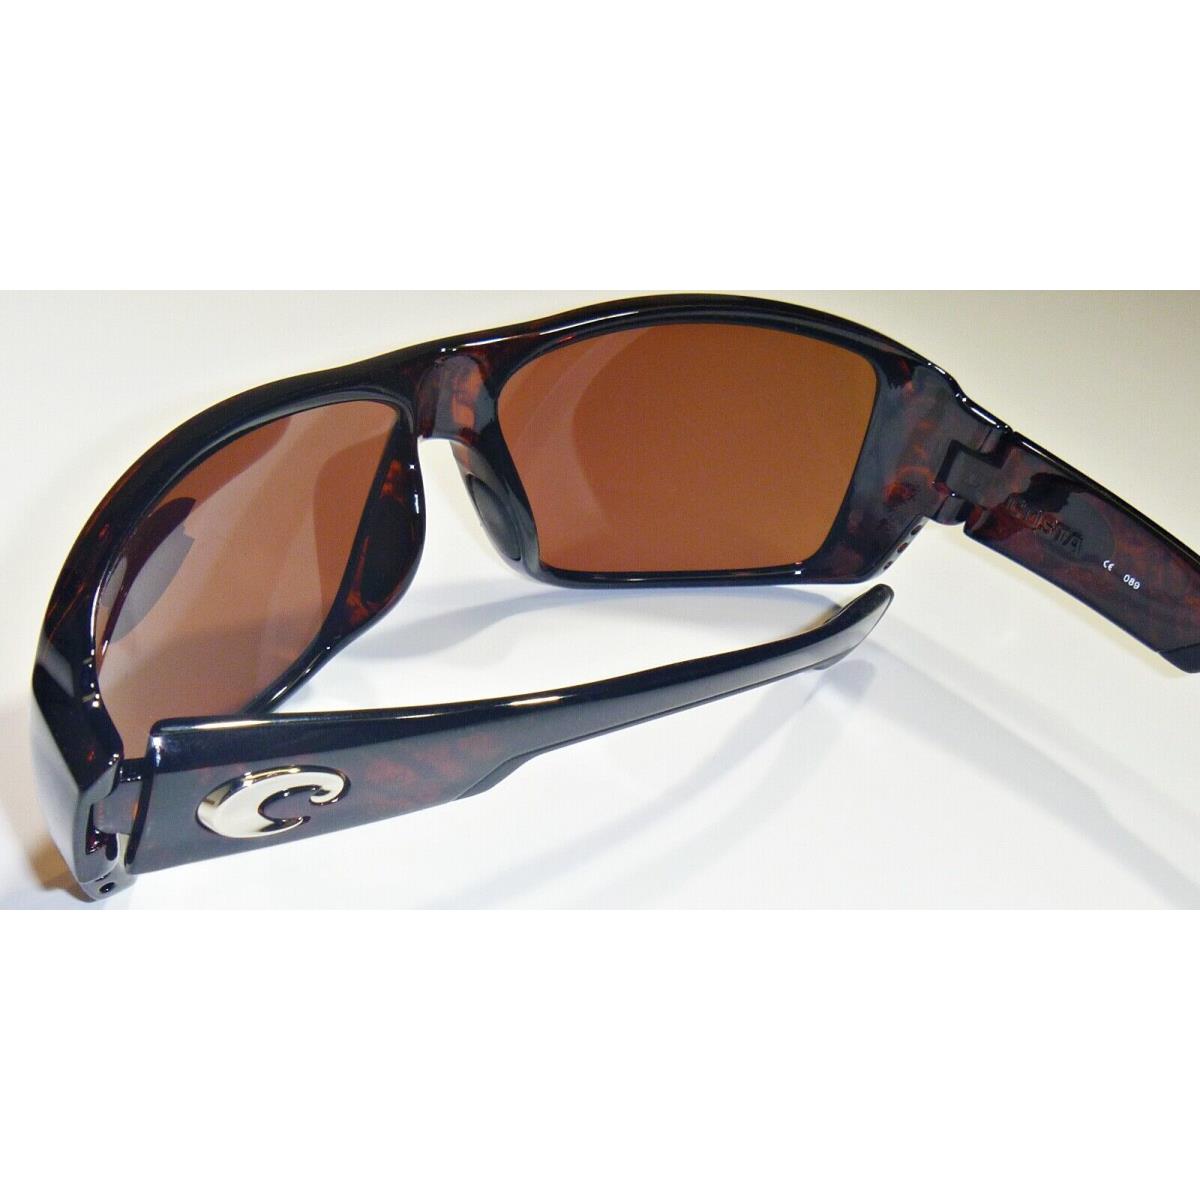 Costa del Mar Double Haul Polarized Sunglasses Tortoise/Copper 580G Glass 